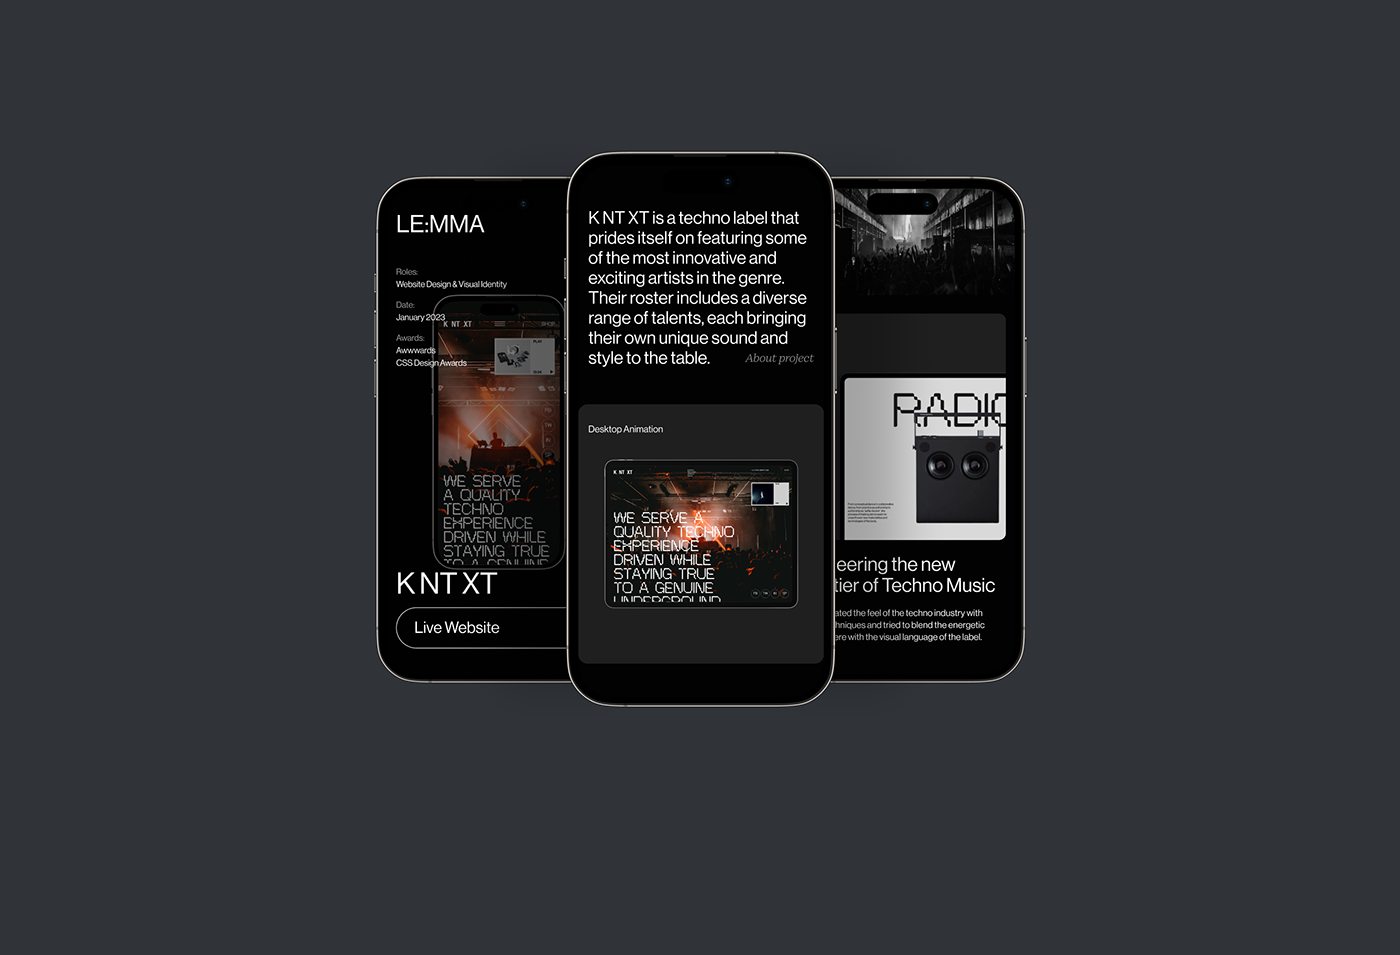 Mobile Case Study. Le:mma Studio. Website Design & Visual Identity.